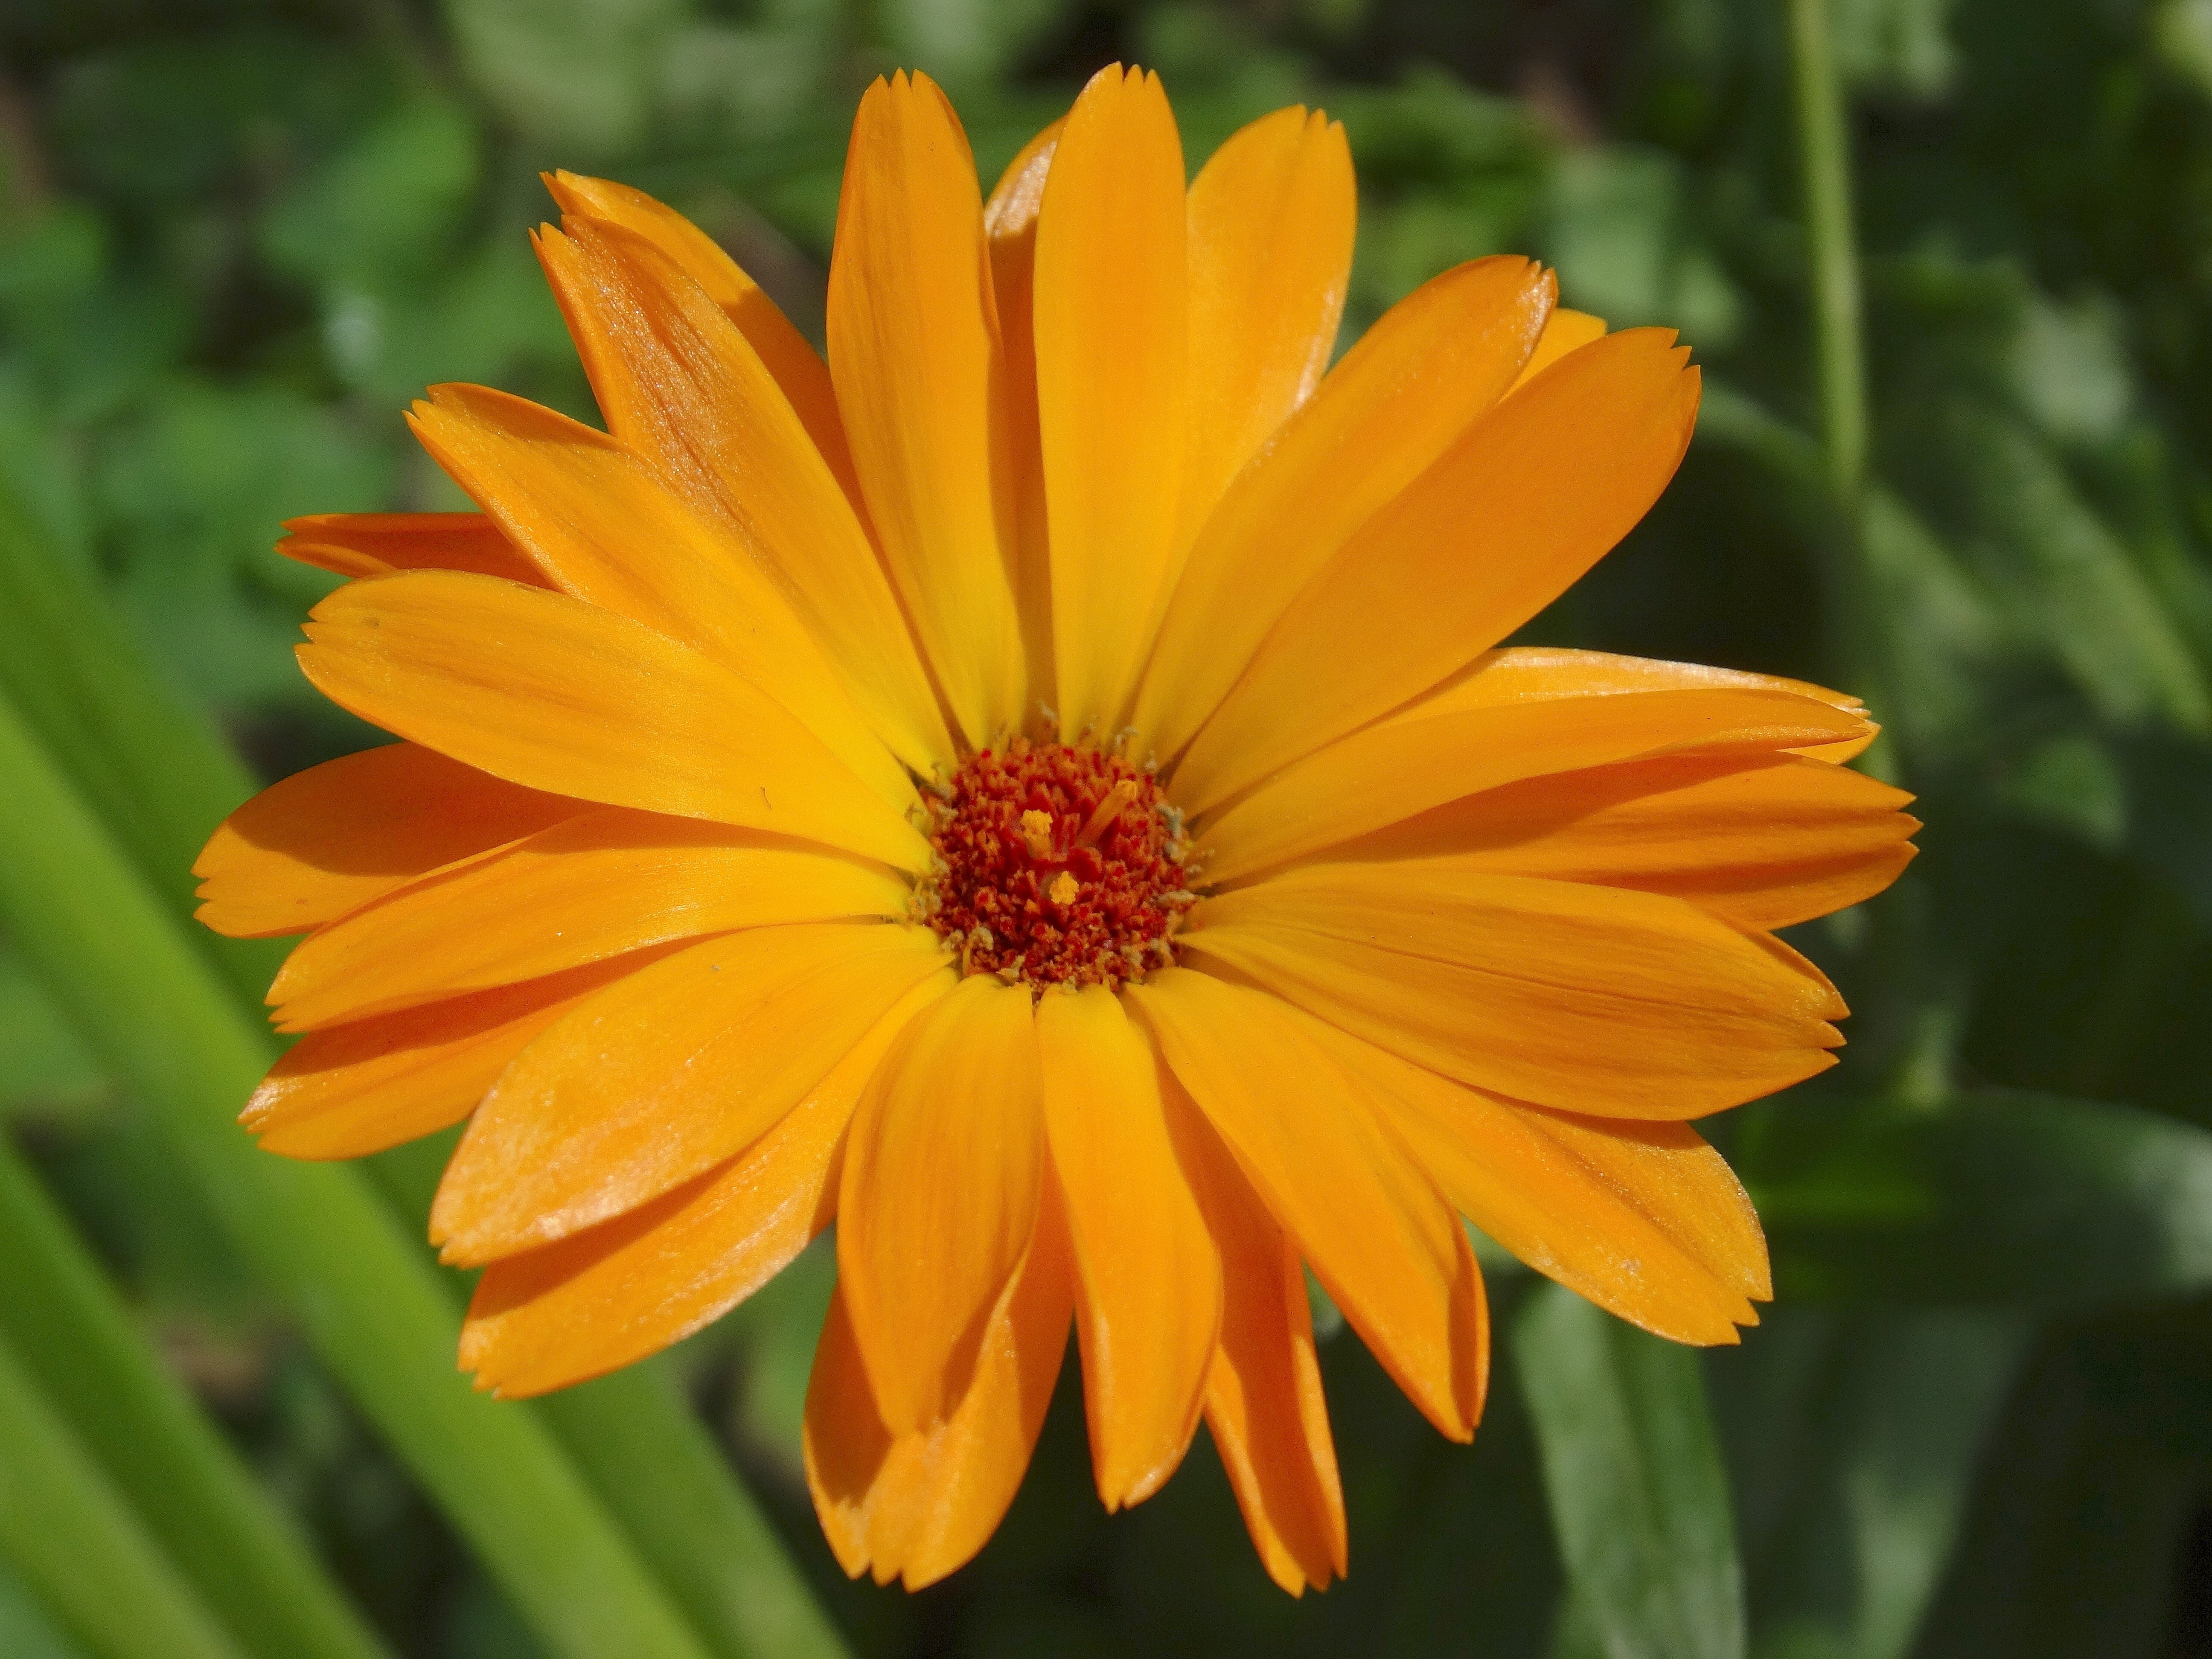 orange petaled flower close up photo